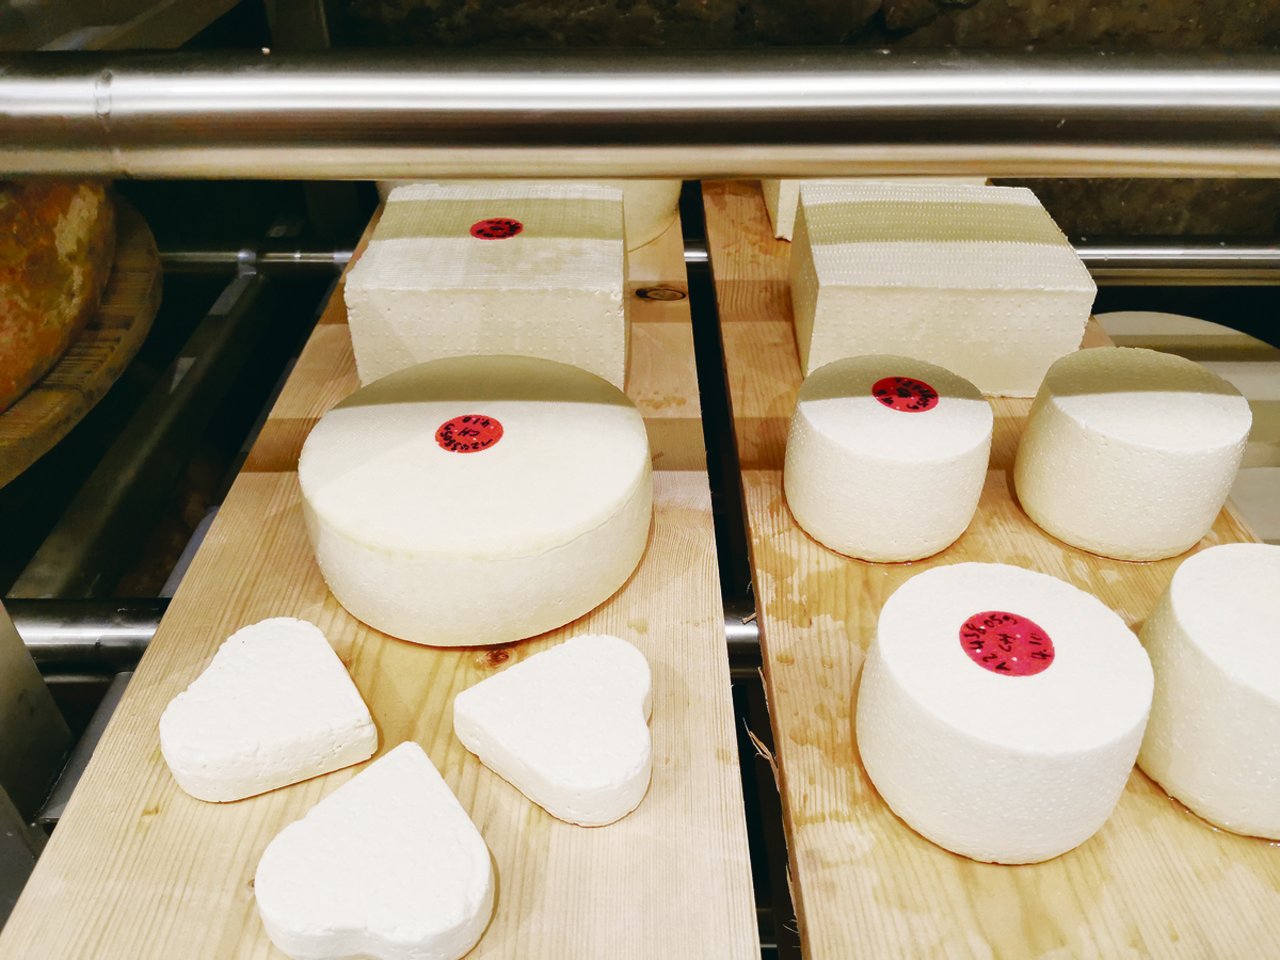 Der erste, in der mobilen Stadtkäserei Burgdorf produzierte Käse liegt im Salzbad. Konsumenten können vor dem Käsehaus K3 zuschauen, wie er entsteht. (Bild sb)